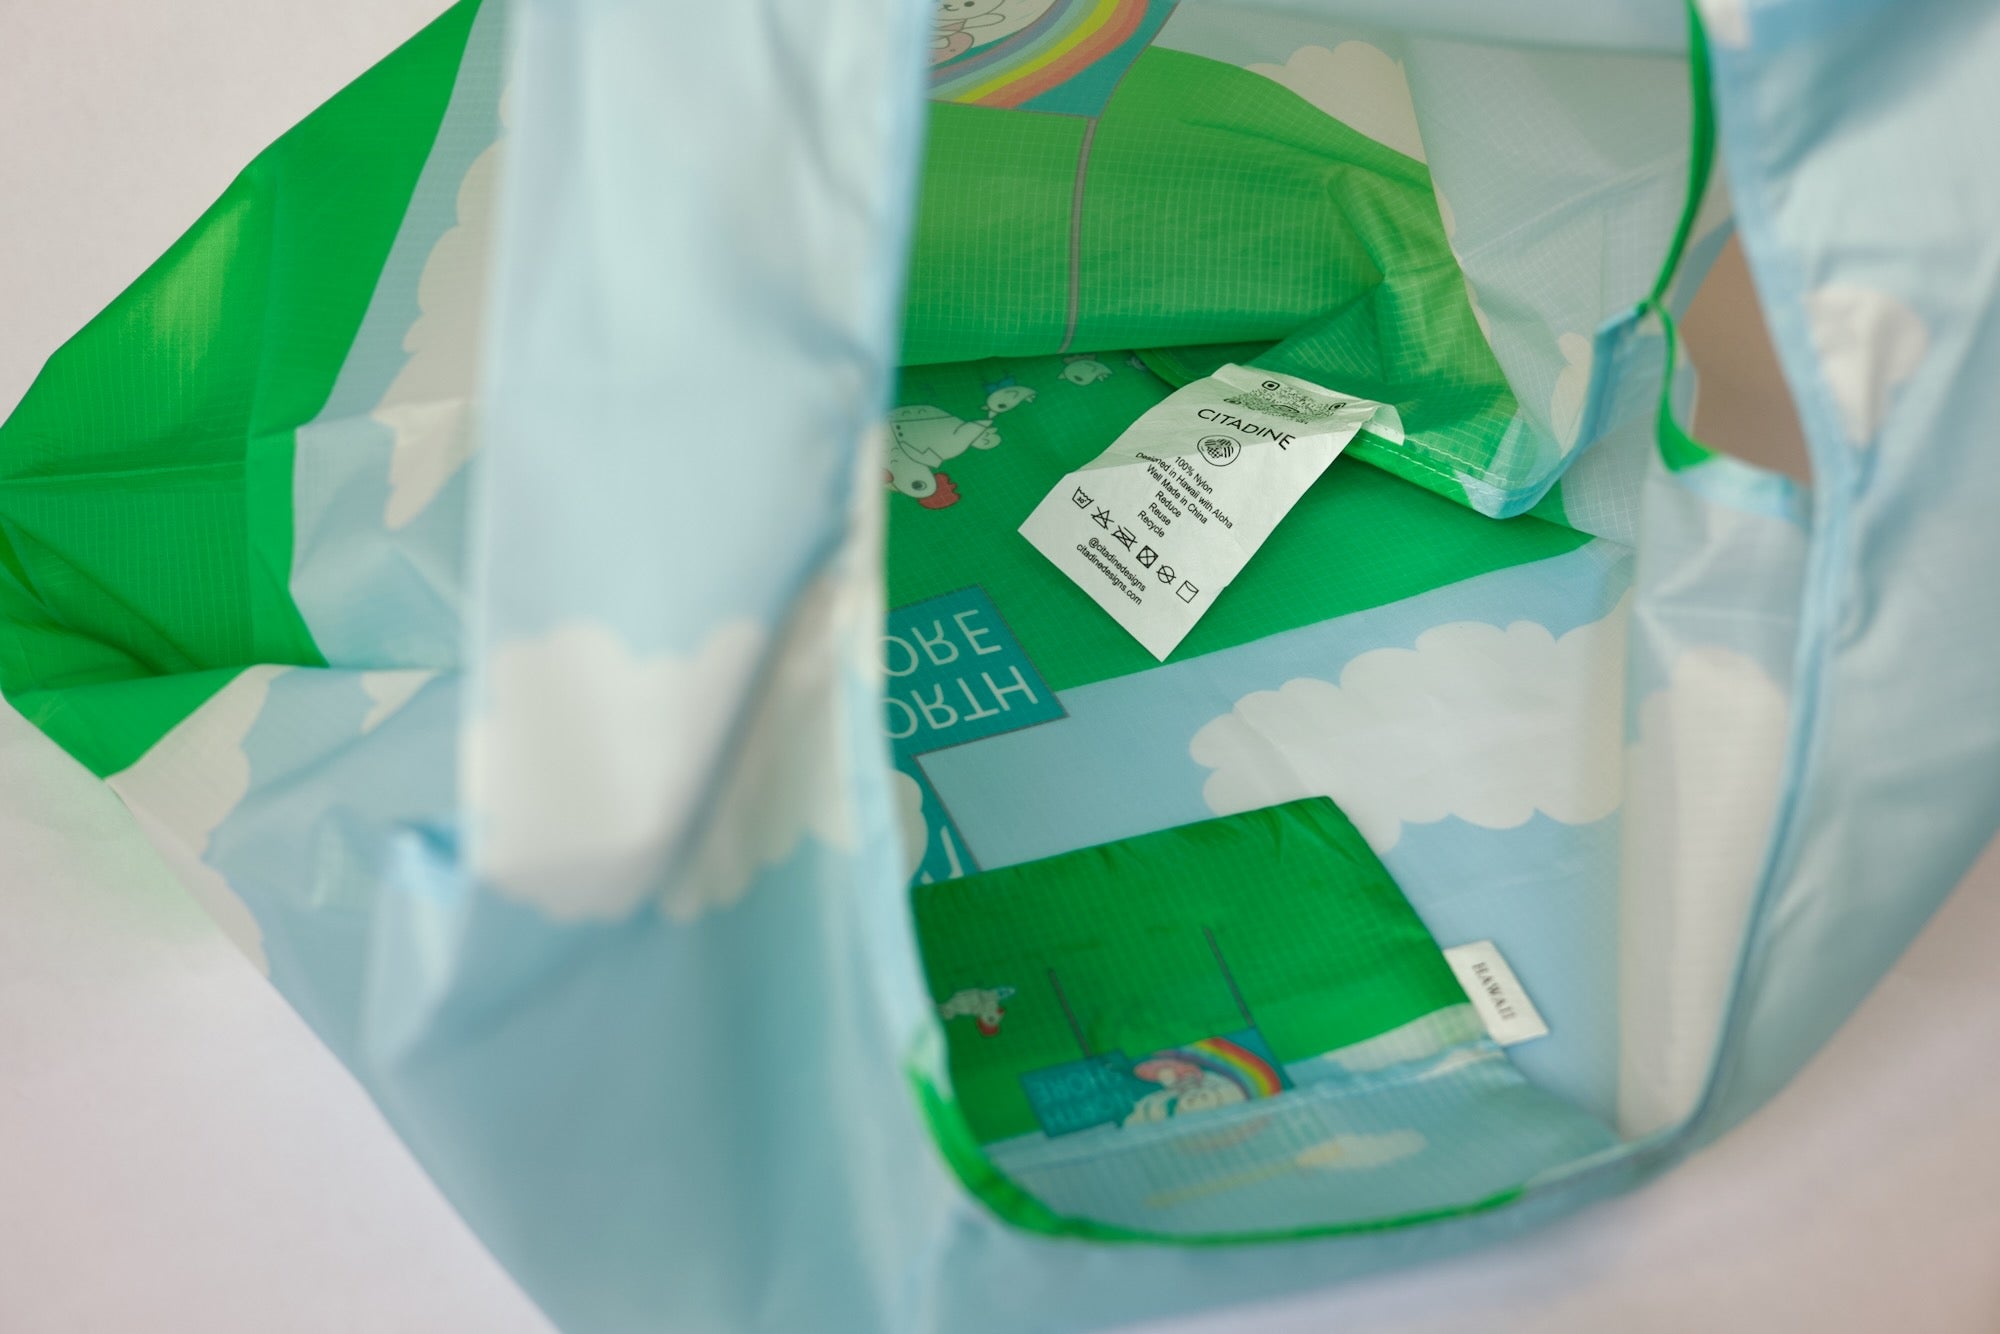 Atasha Rabbit Surfs Haleiwa Reusable Eco-Friendly Tote Bag